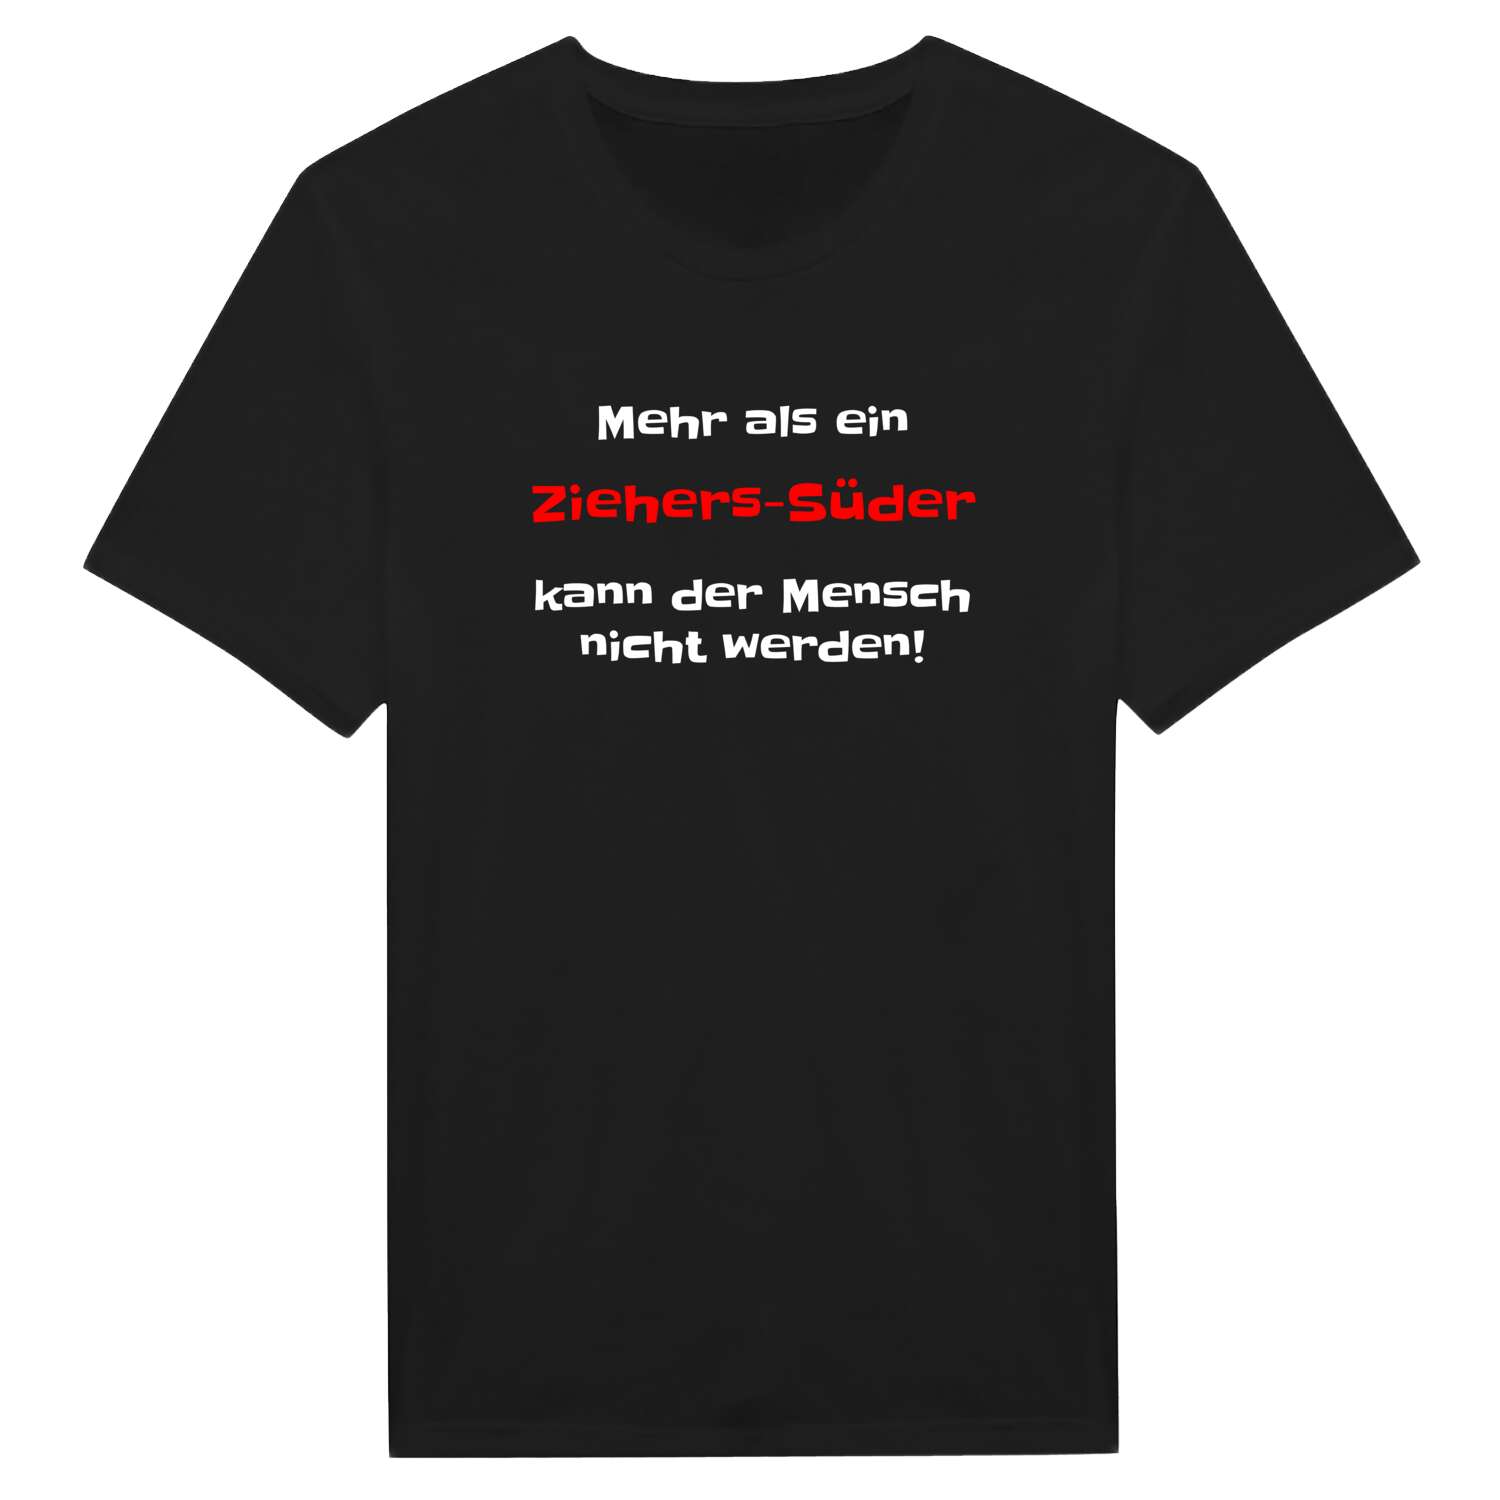 Ziehers-Süd T-Shirt »Mehr als ein«